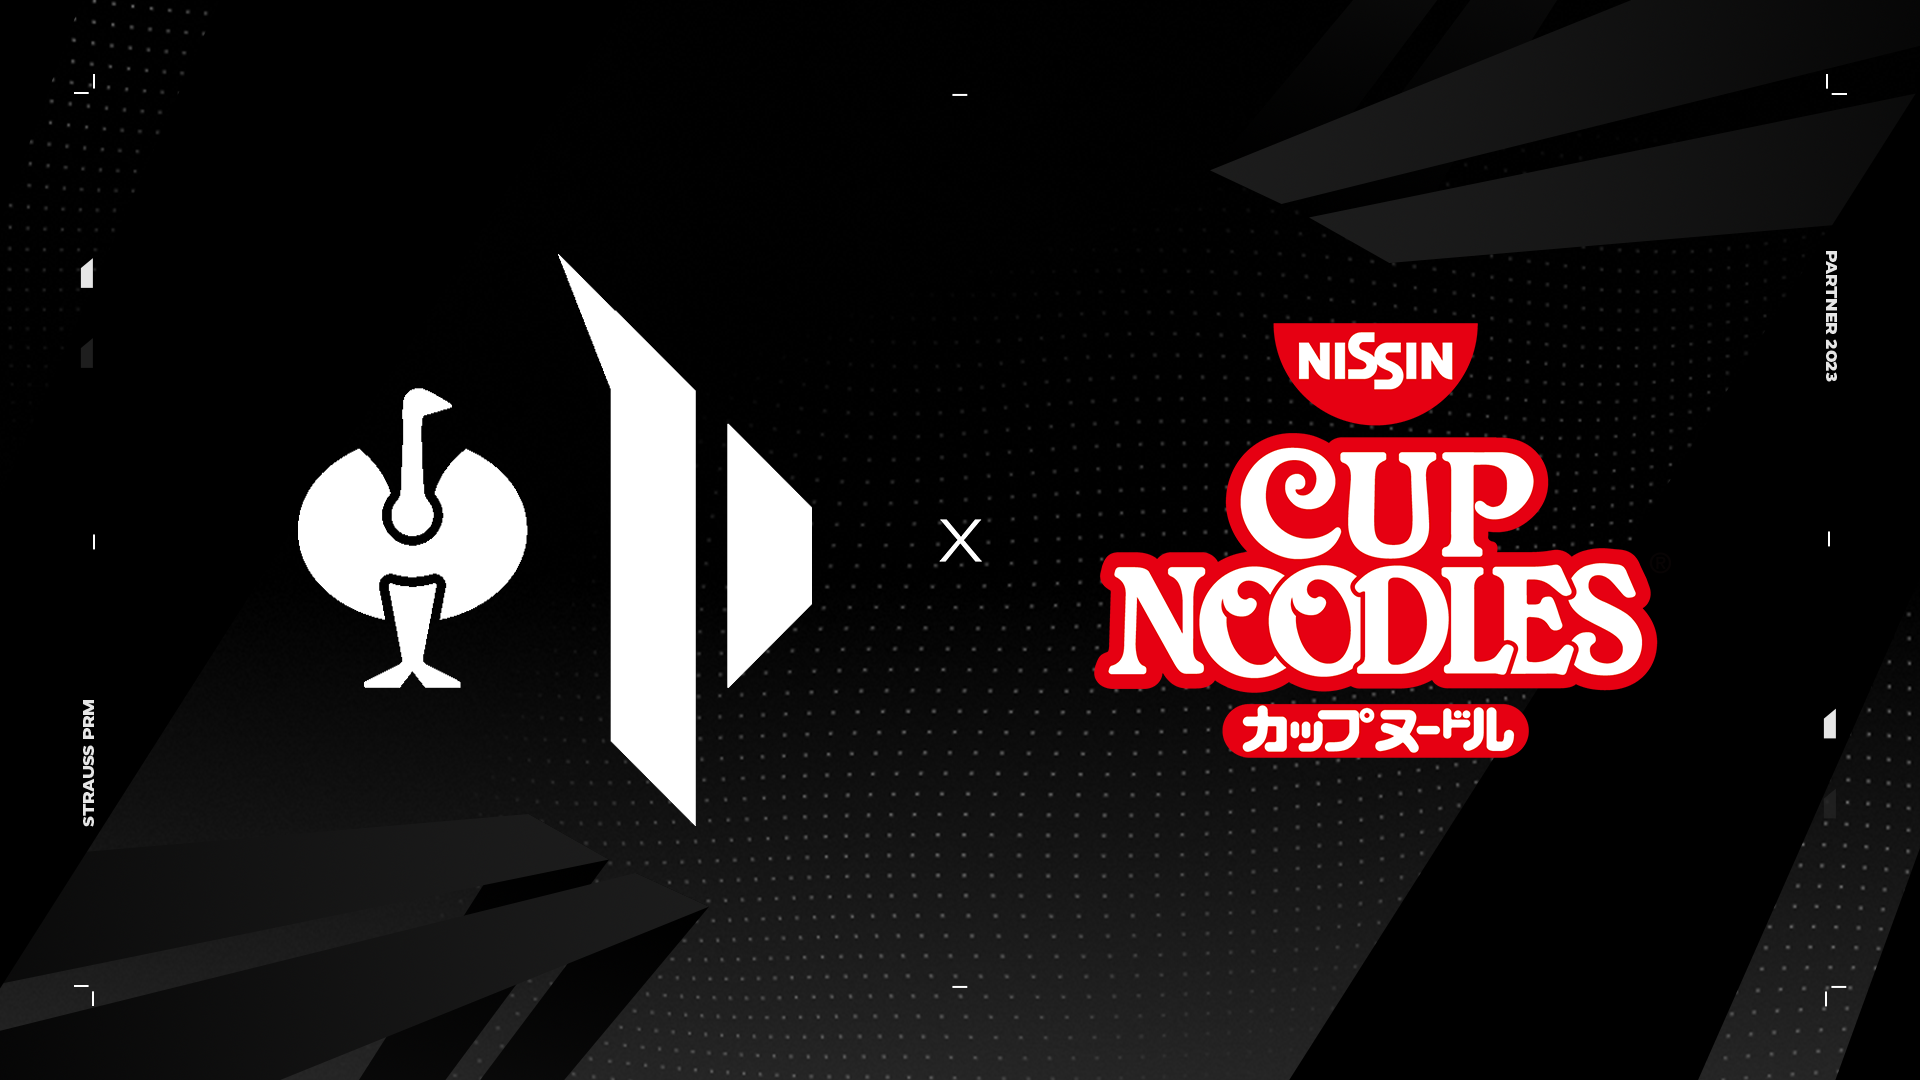 Das Bild zeigt das Logo der Prime League sowie das von Nissin Cup Noodles.